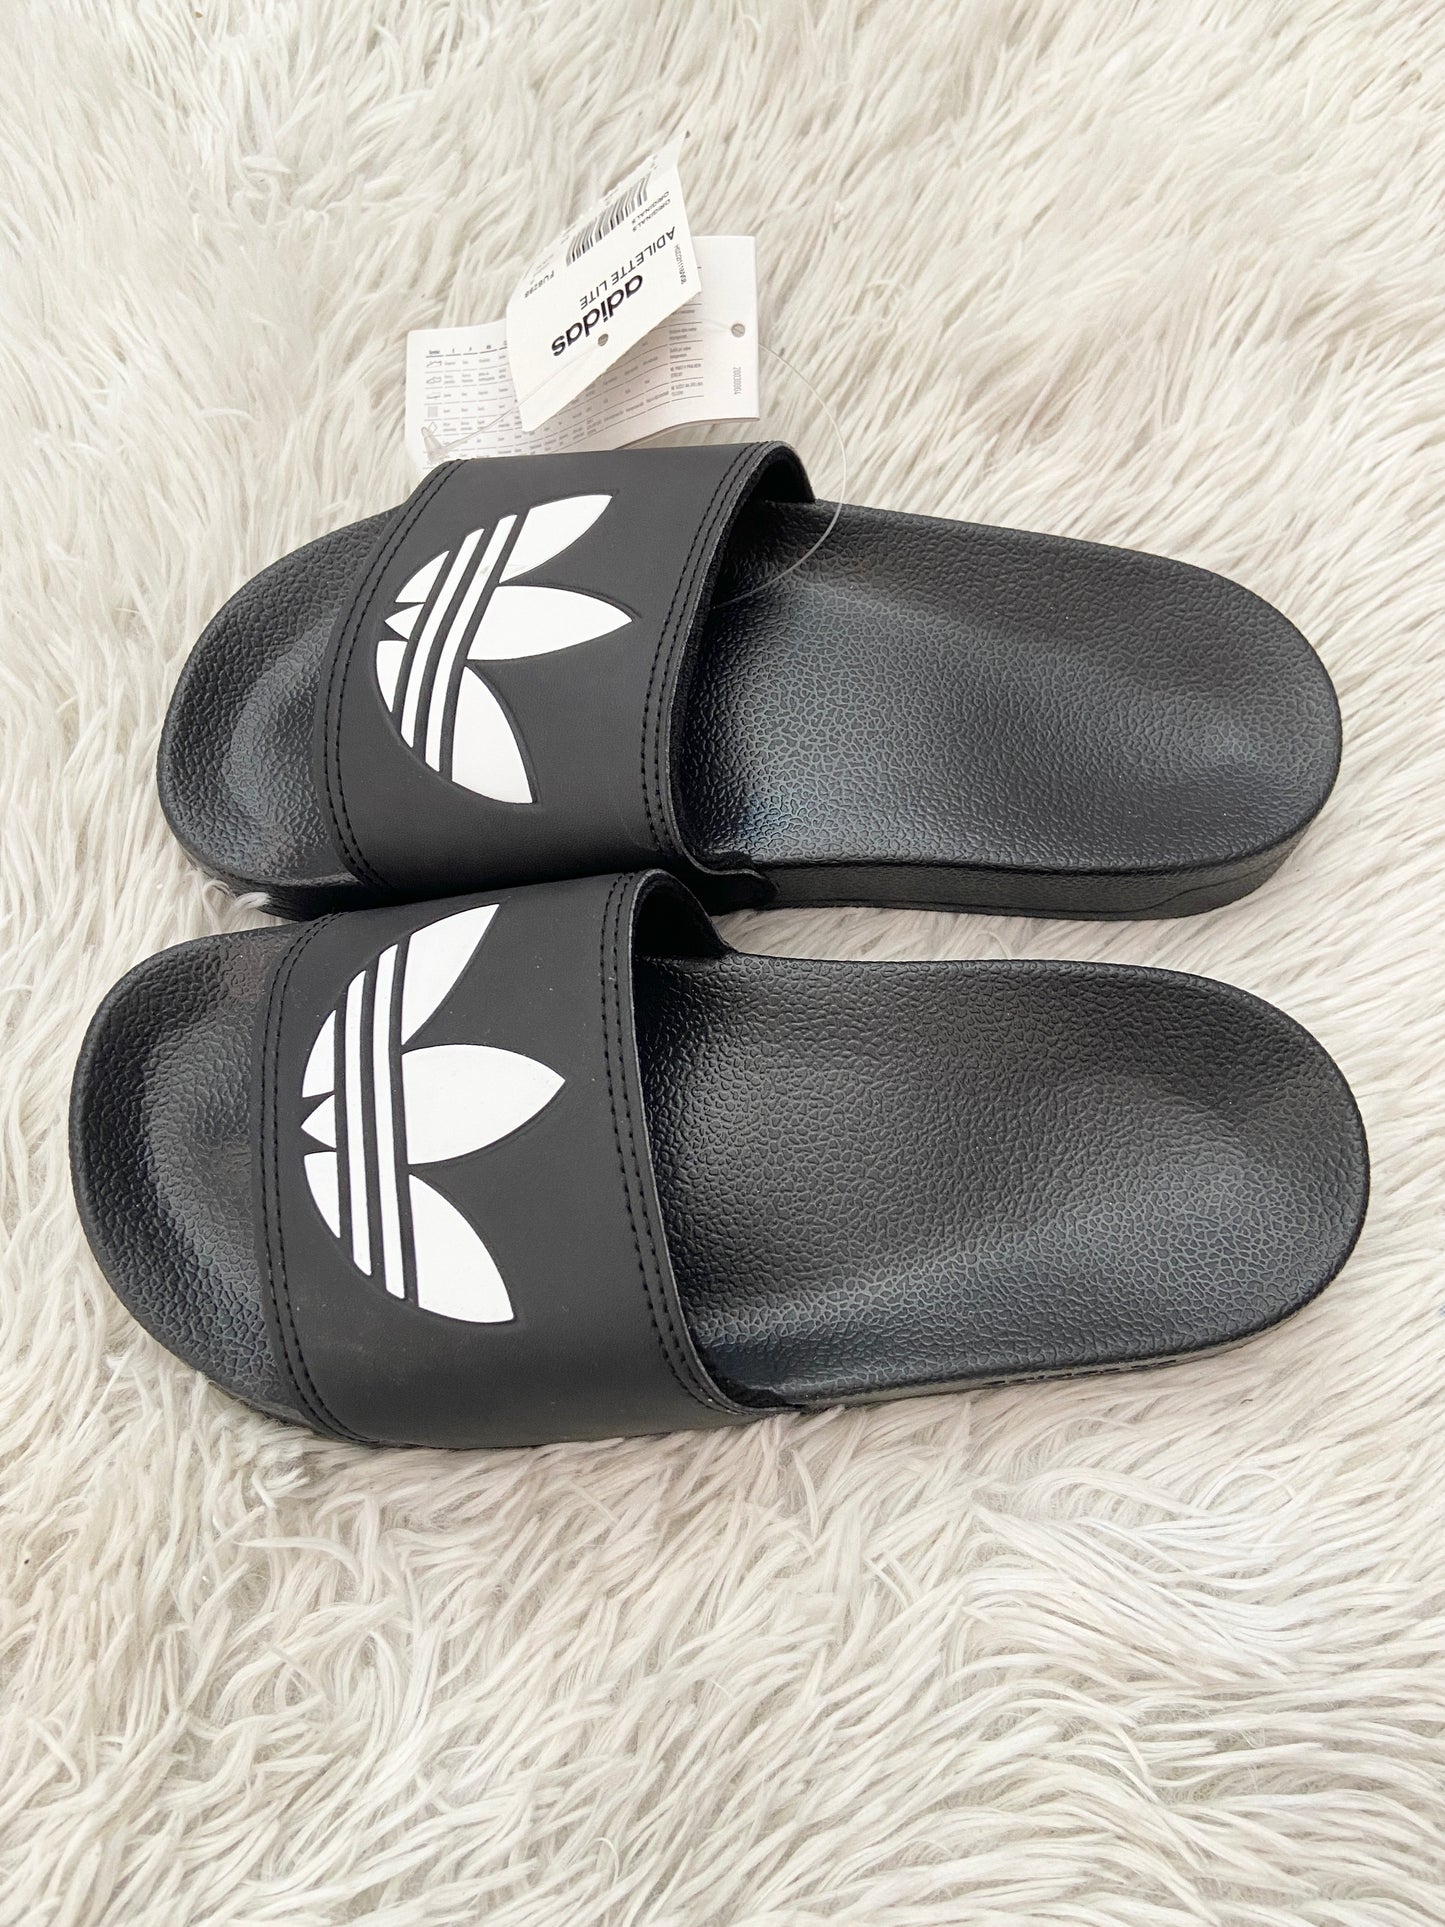 Sandalias Adidas original negra con logotipo en frente de la marca en blanco.